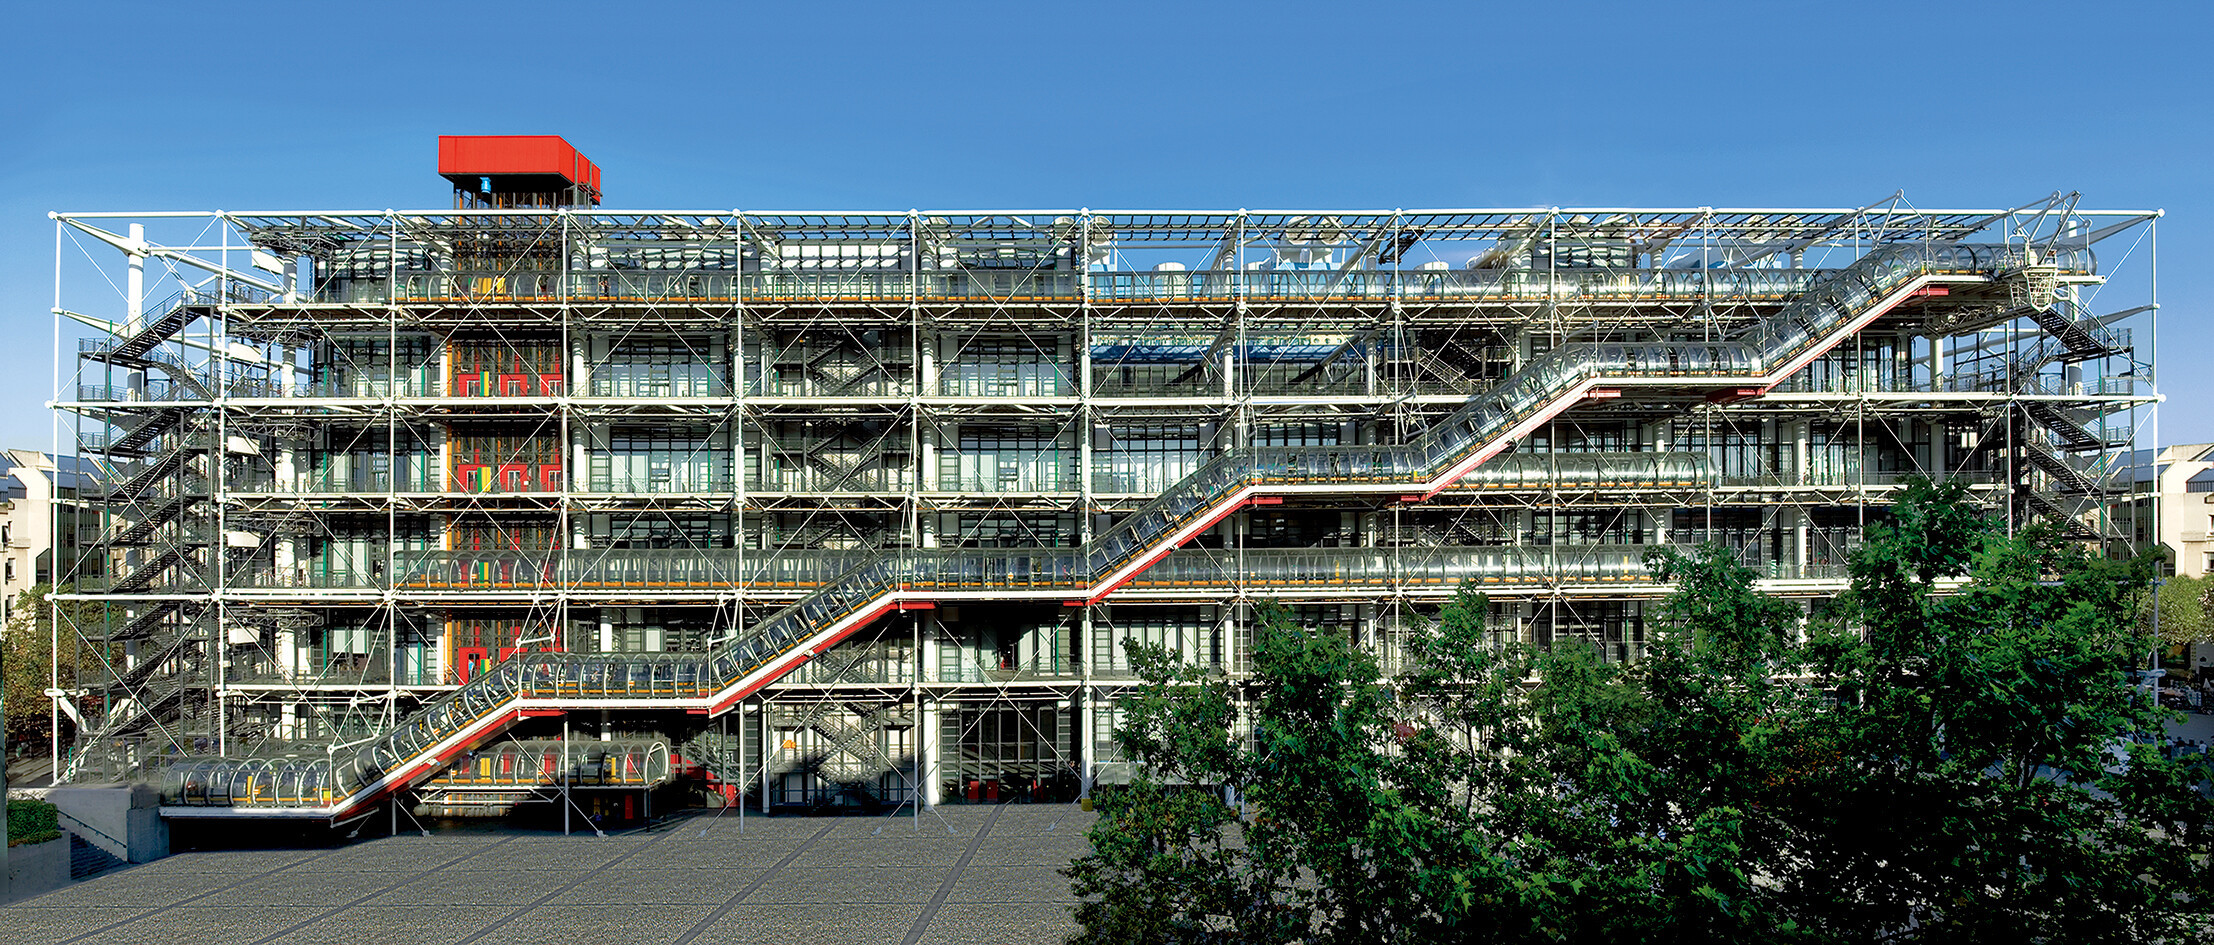 ポンピドゥーセンター外観 Centre Pompidou, architectes Renzo Piano et Richard Rogers, photo : G. Meguerditchian (c) Centre Pompidou, 2020